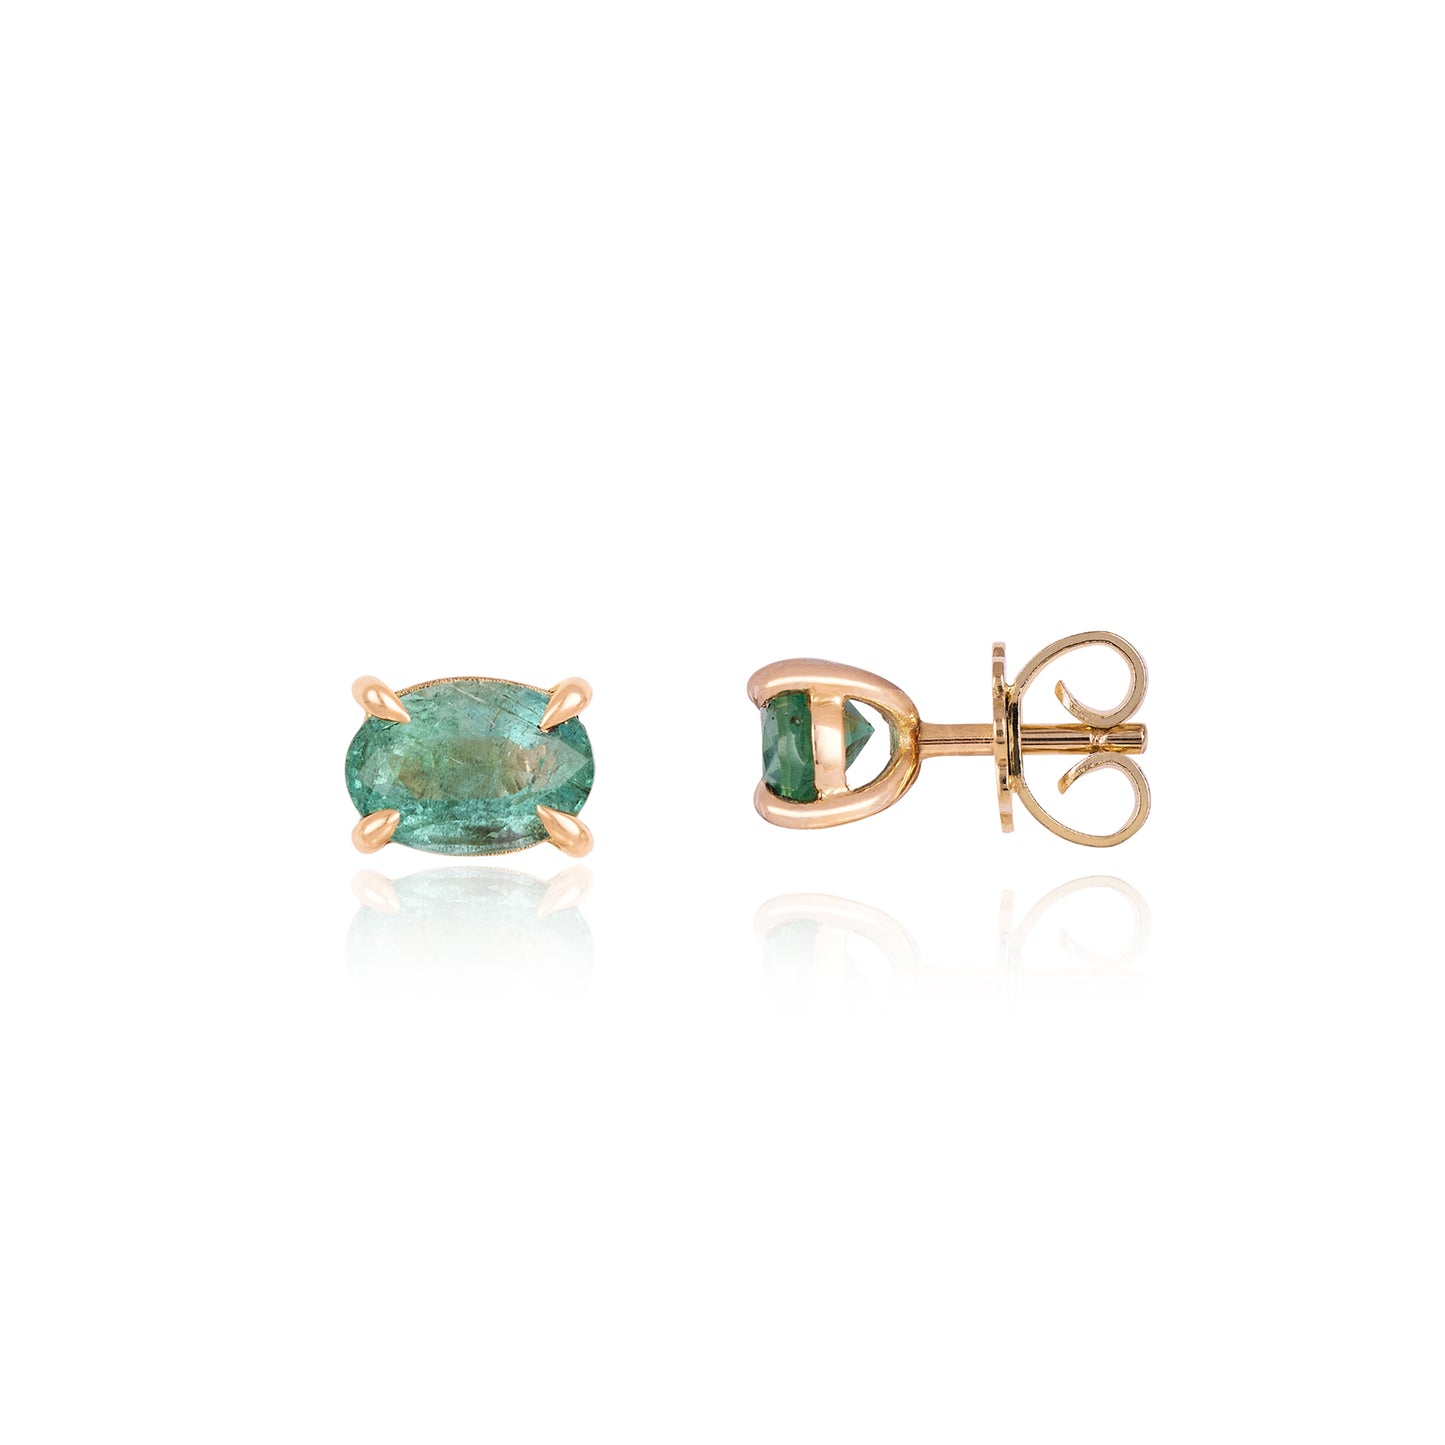 Emerald Oval Stud Earrings